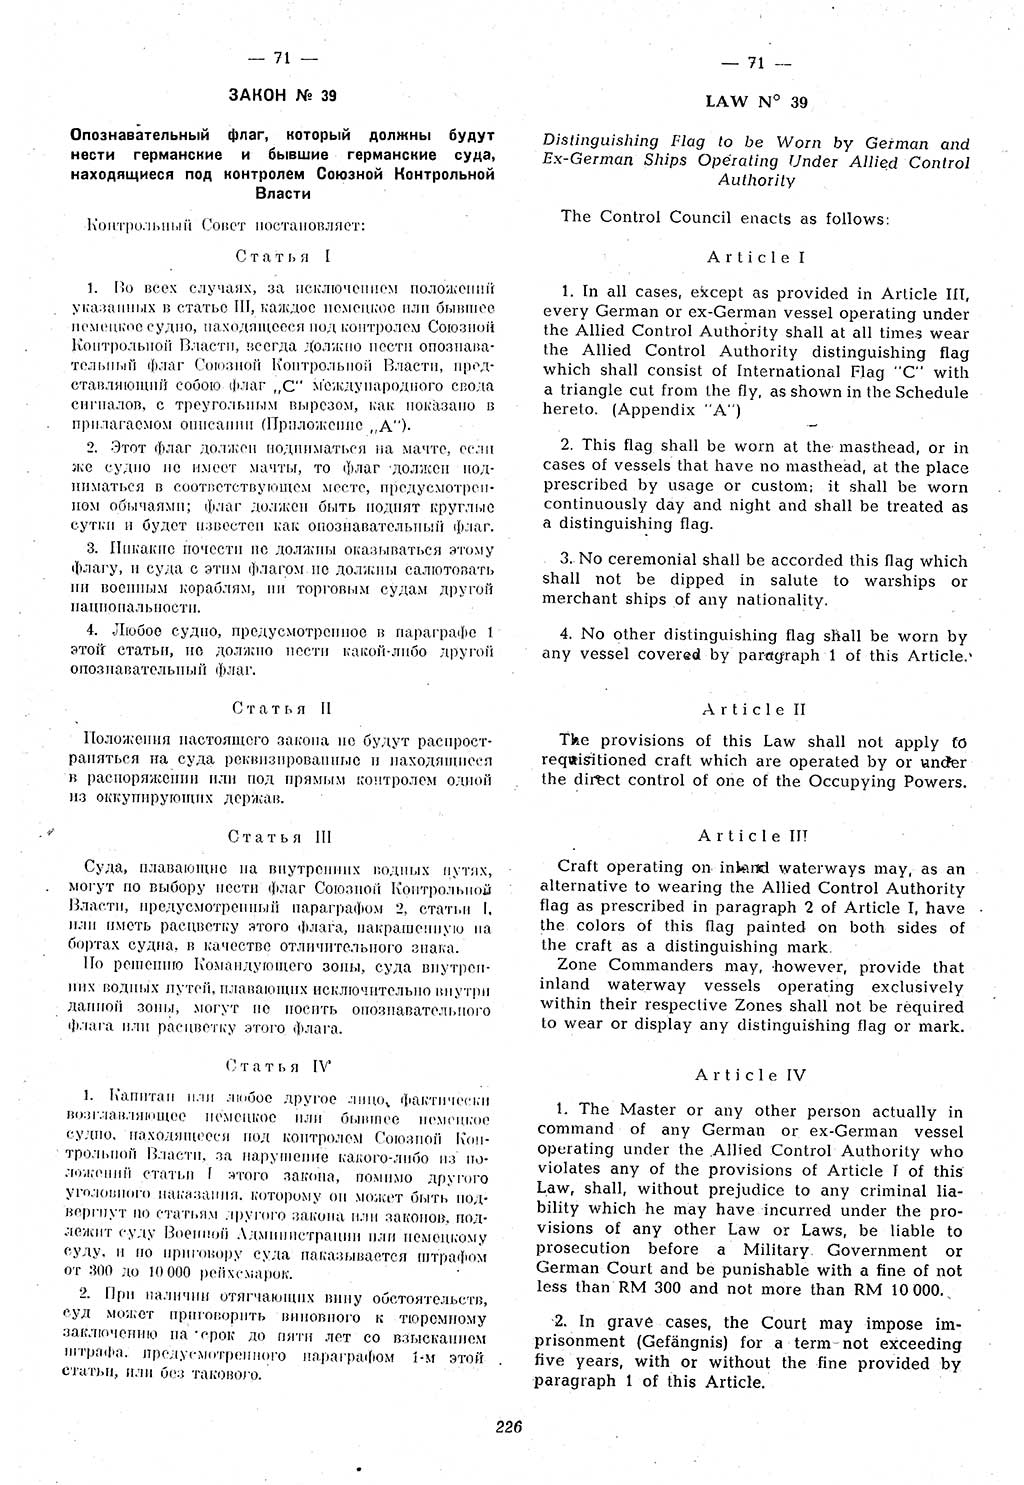 Amtsblatt des Kontrollrats (ABlKR) in Deutschland 1946, Seite 226/1 (ABlKR Dtl. 1946, S. 226/1)